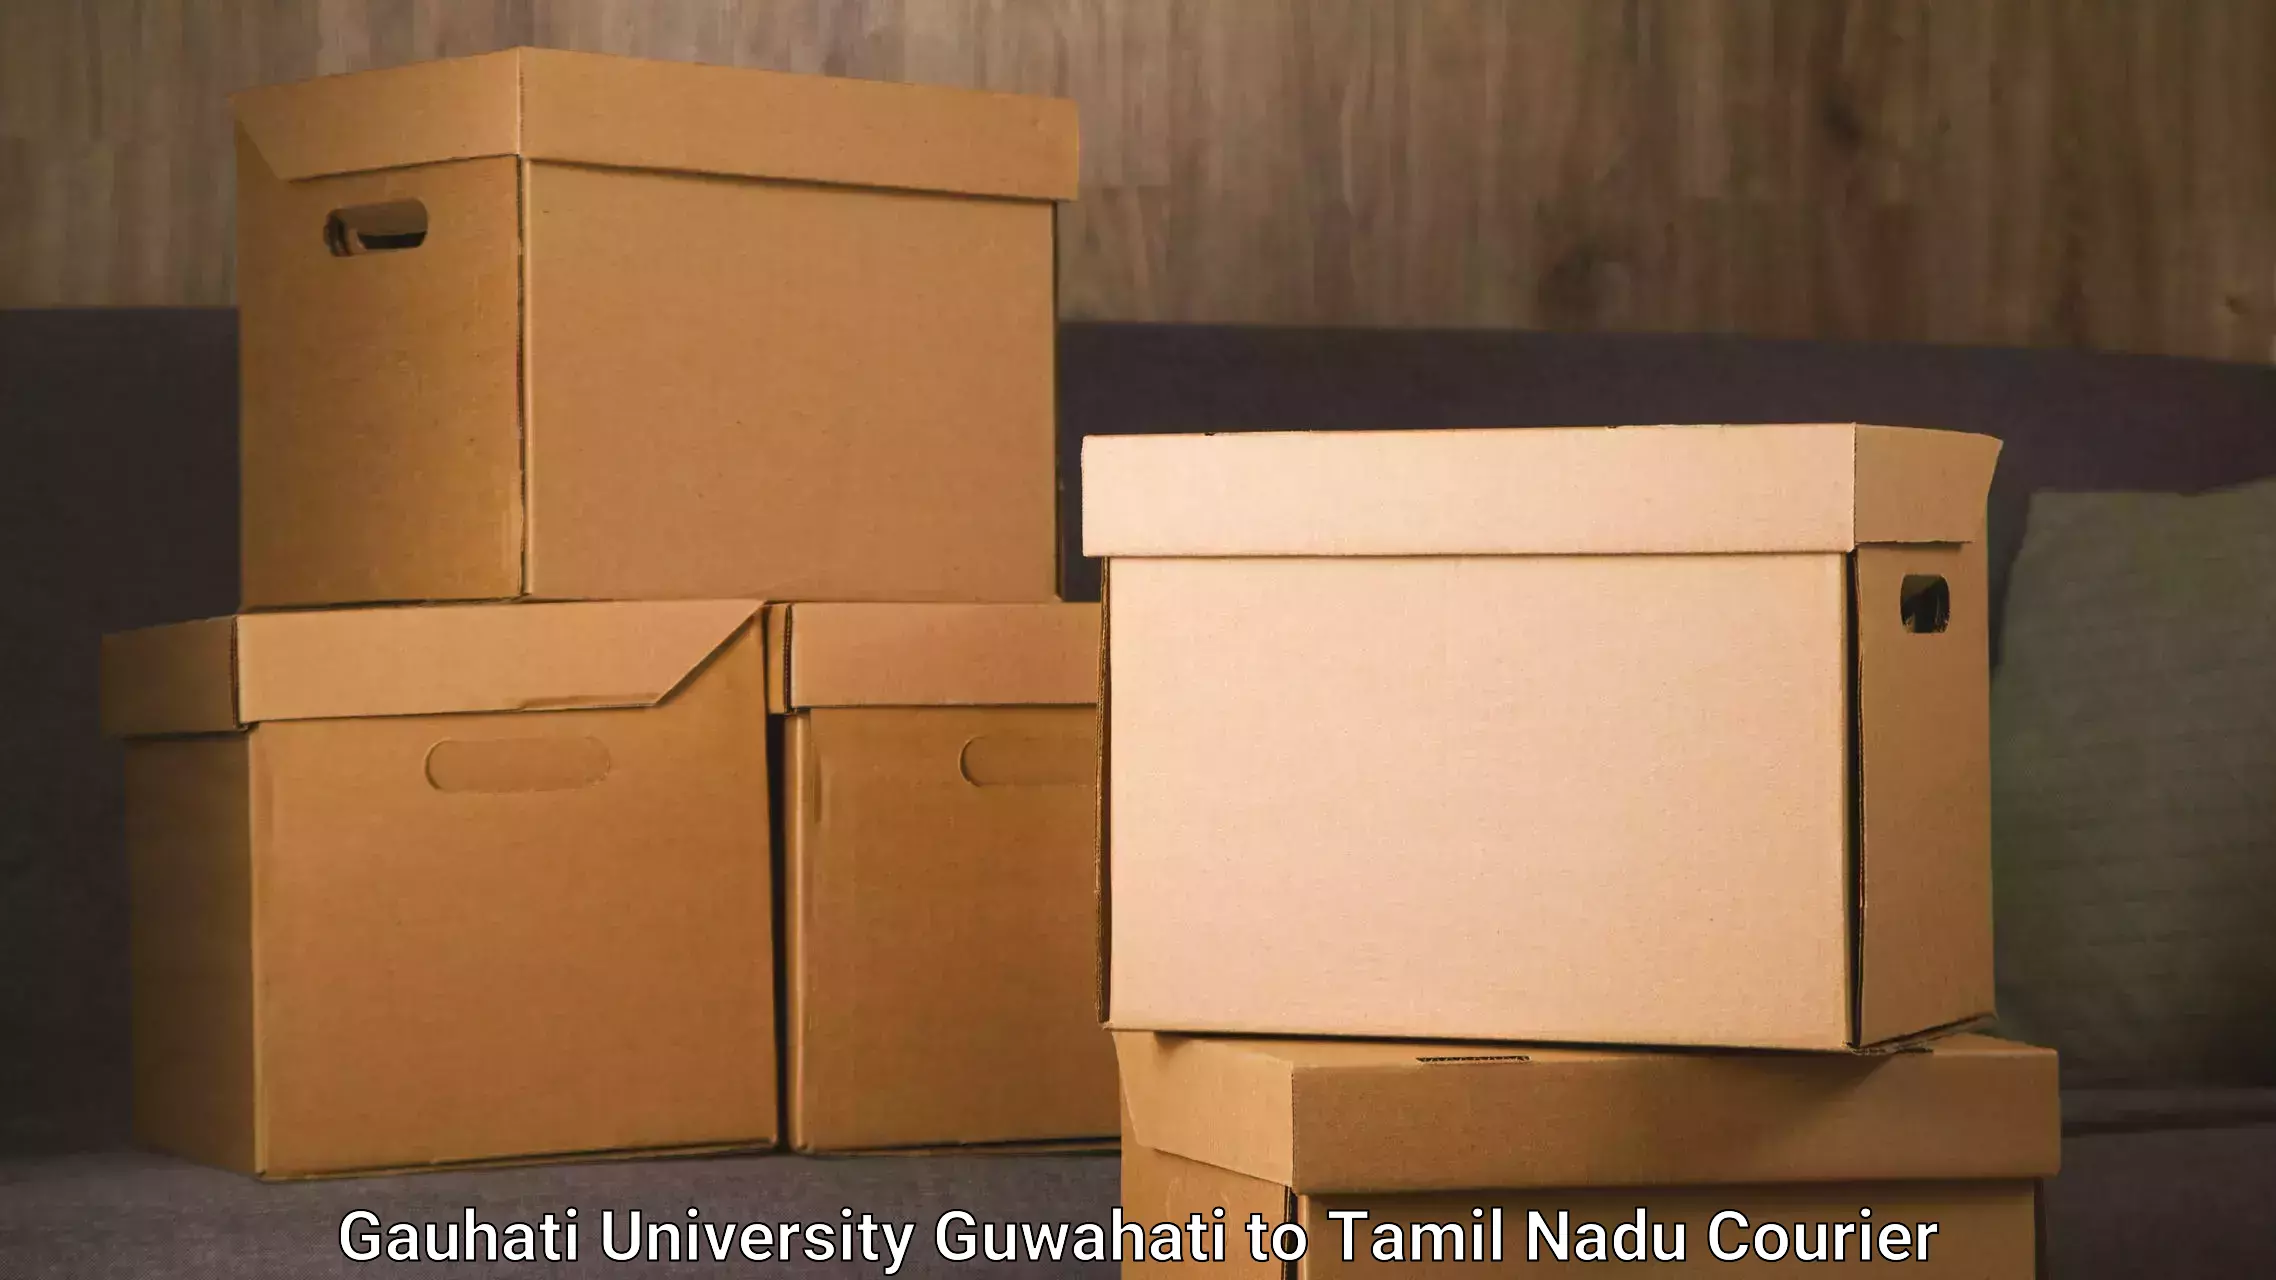 Door-to-door freight service in Gauhati University Guwahati to Maharajapuram